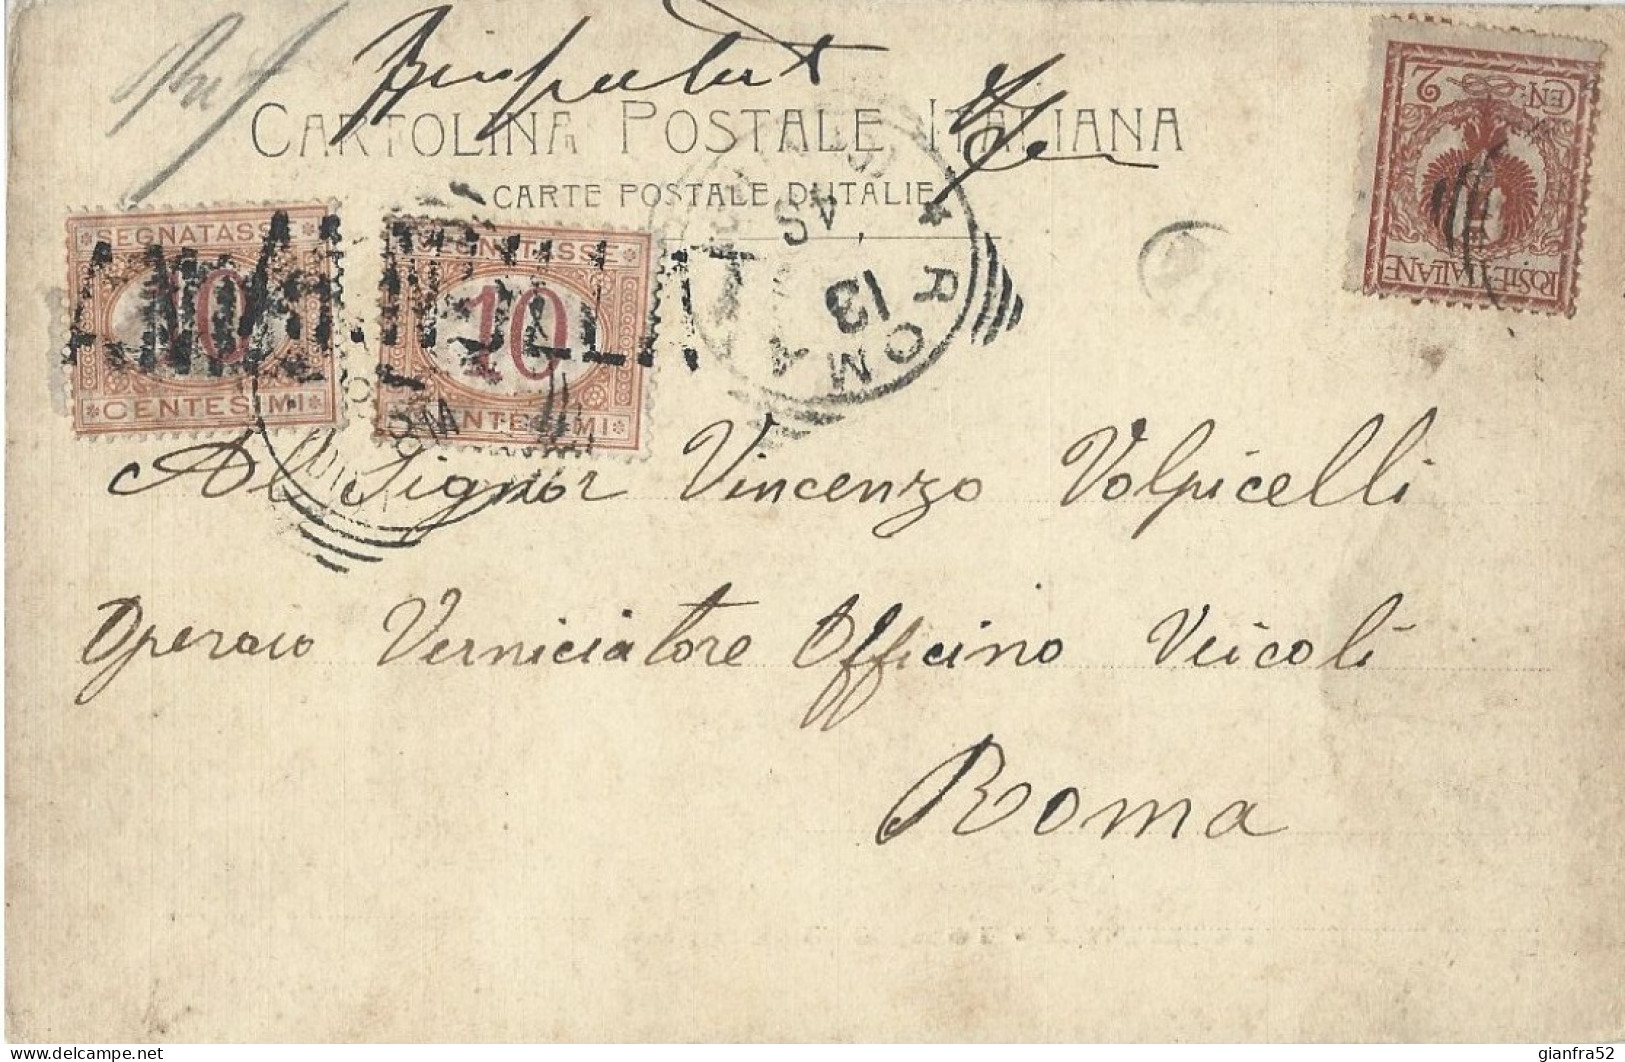 STORIA POSTALE CARTOLINA ILLUSTRATA TASSA CON CENT. 10 SEGNATASSE DEL 1901 BOLLO ANNULLATO + DATARIO - Postage Due